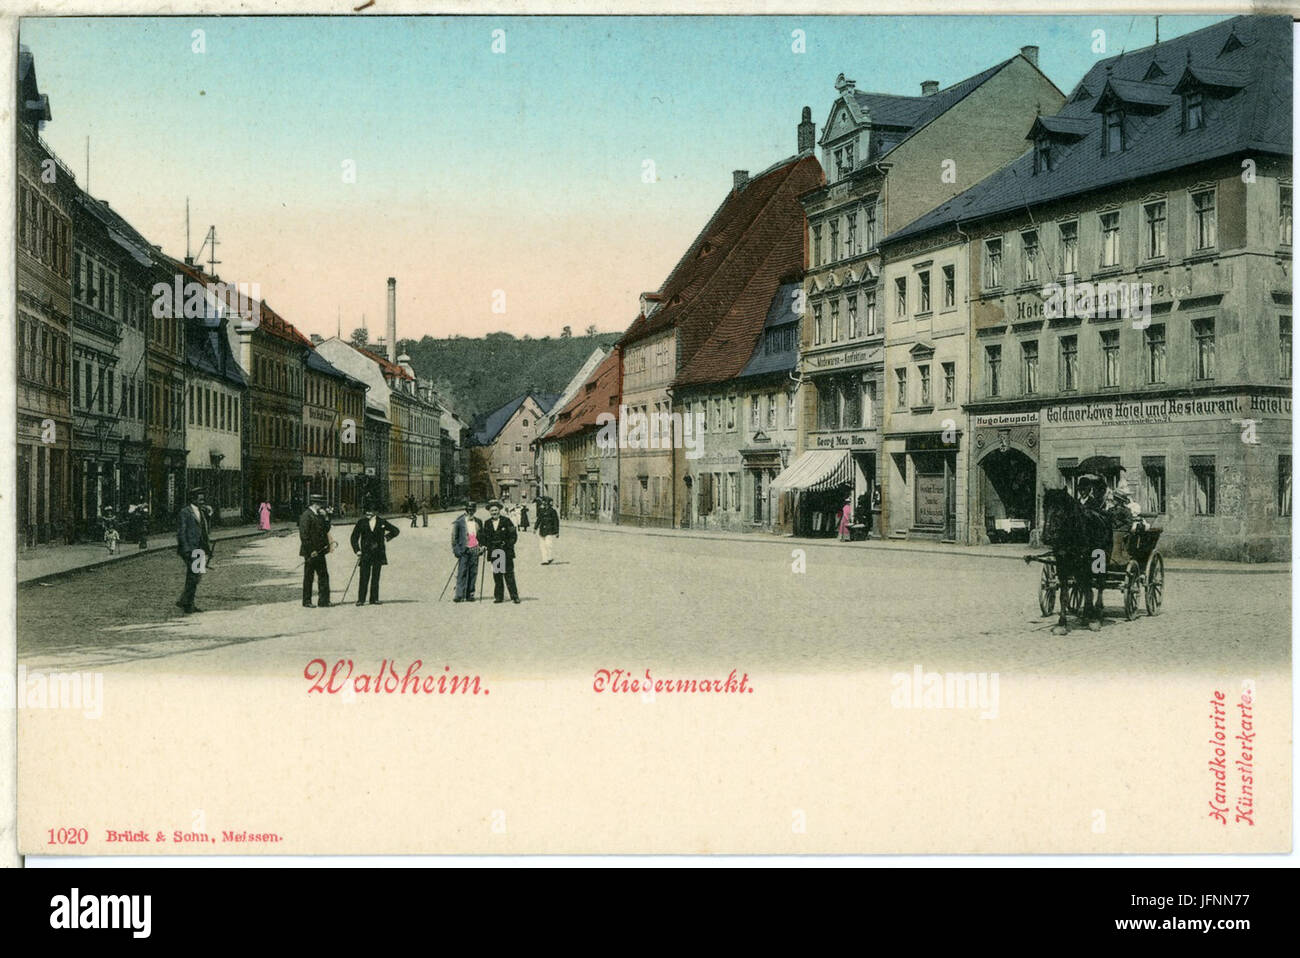 01020-Waldheim-1899-Niedermarkt mit Fuhrwerk und Leuten-Brück & Sohn Kunstverlag Stock Photo